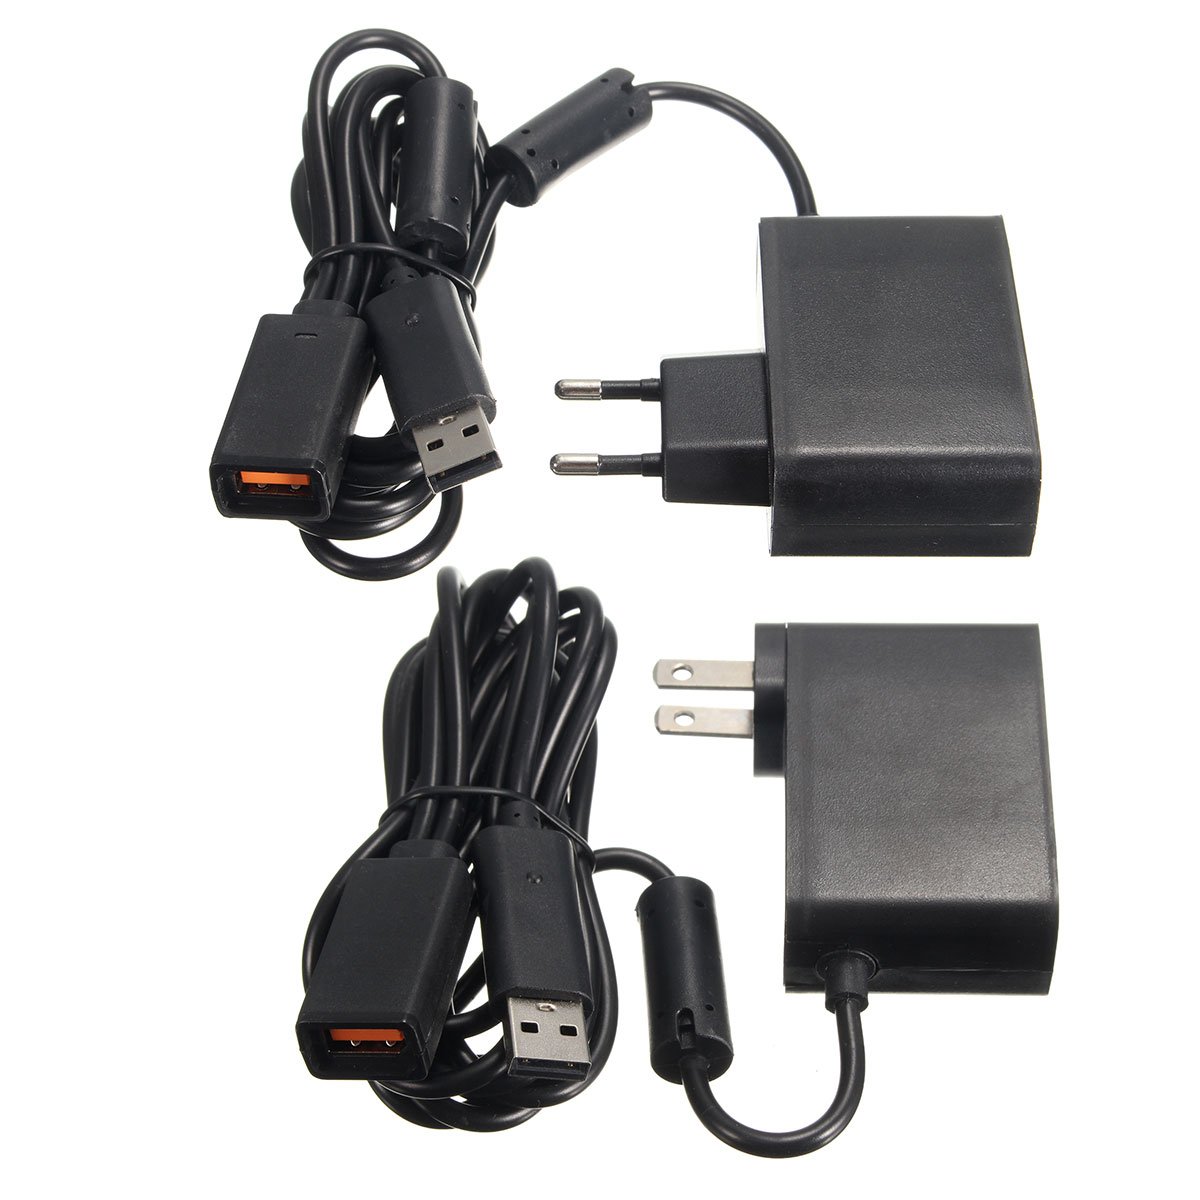 2.3m USB AC Adapter Power Supply Cable for Xbox 360 Kinect Sensor EU/US Plug 1